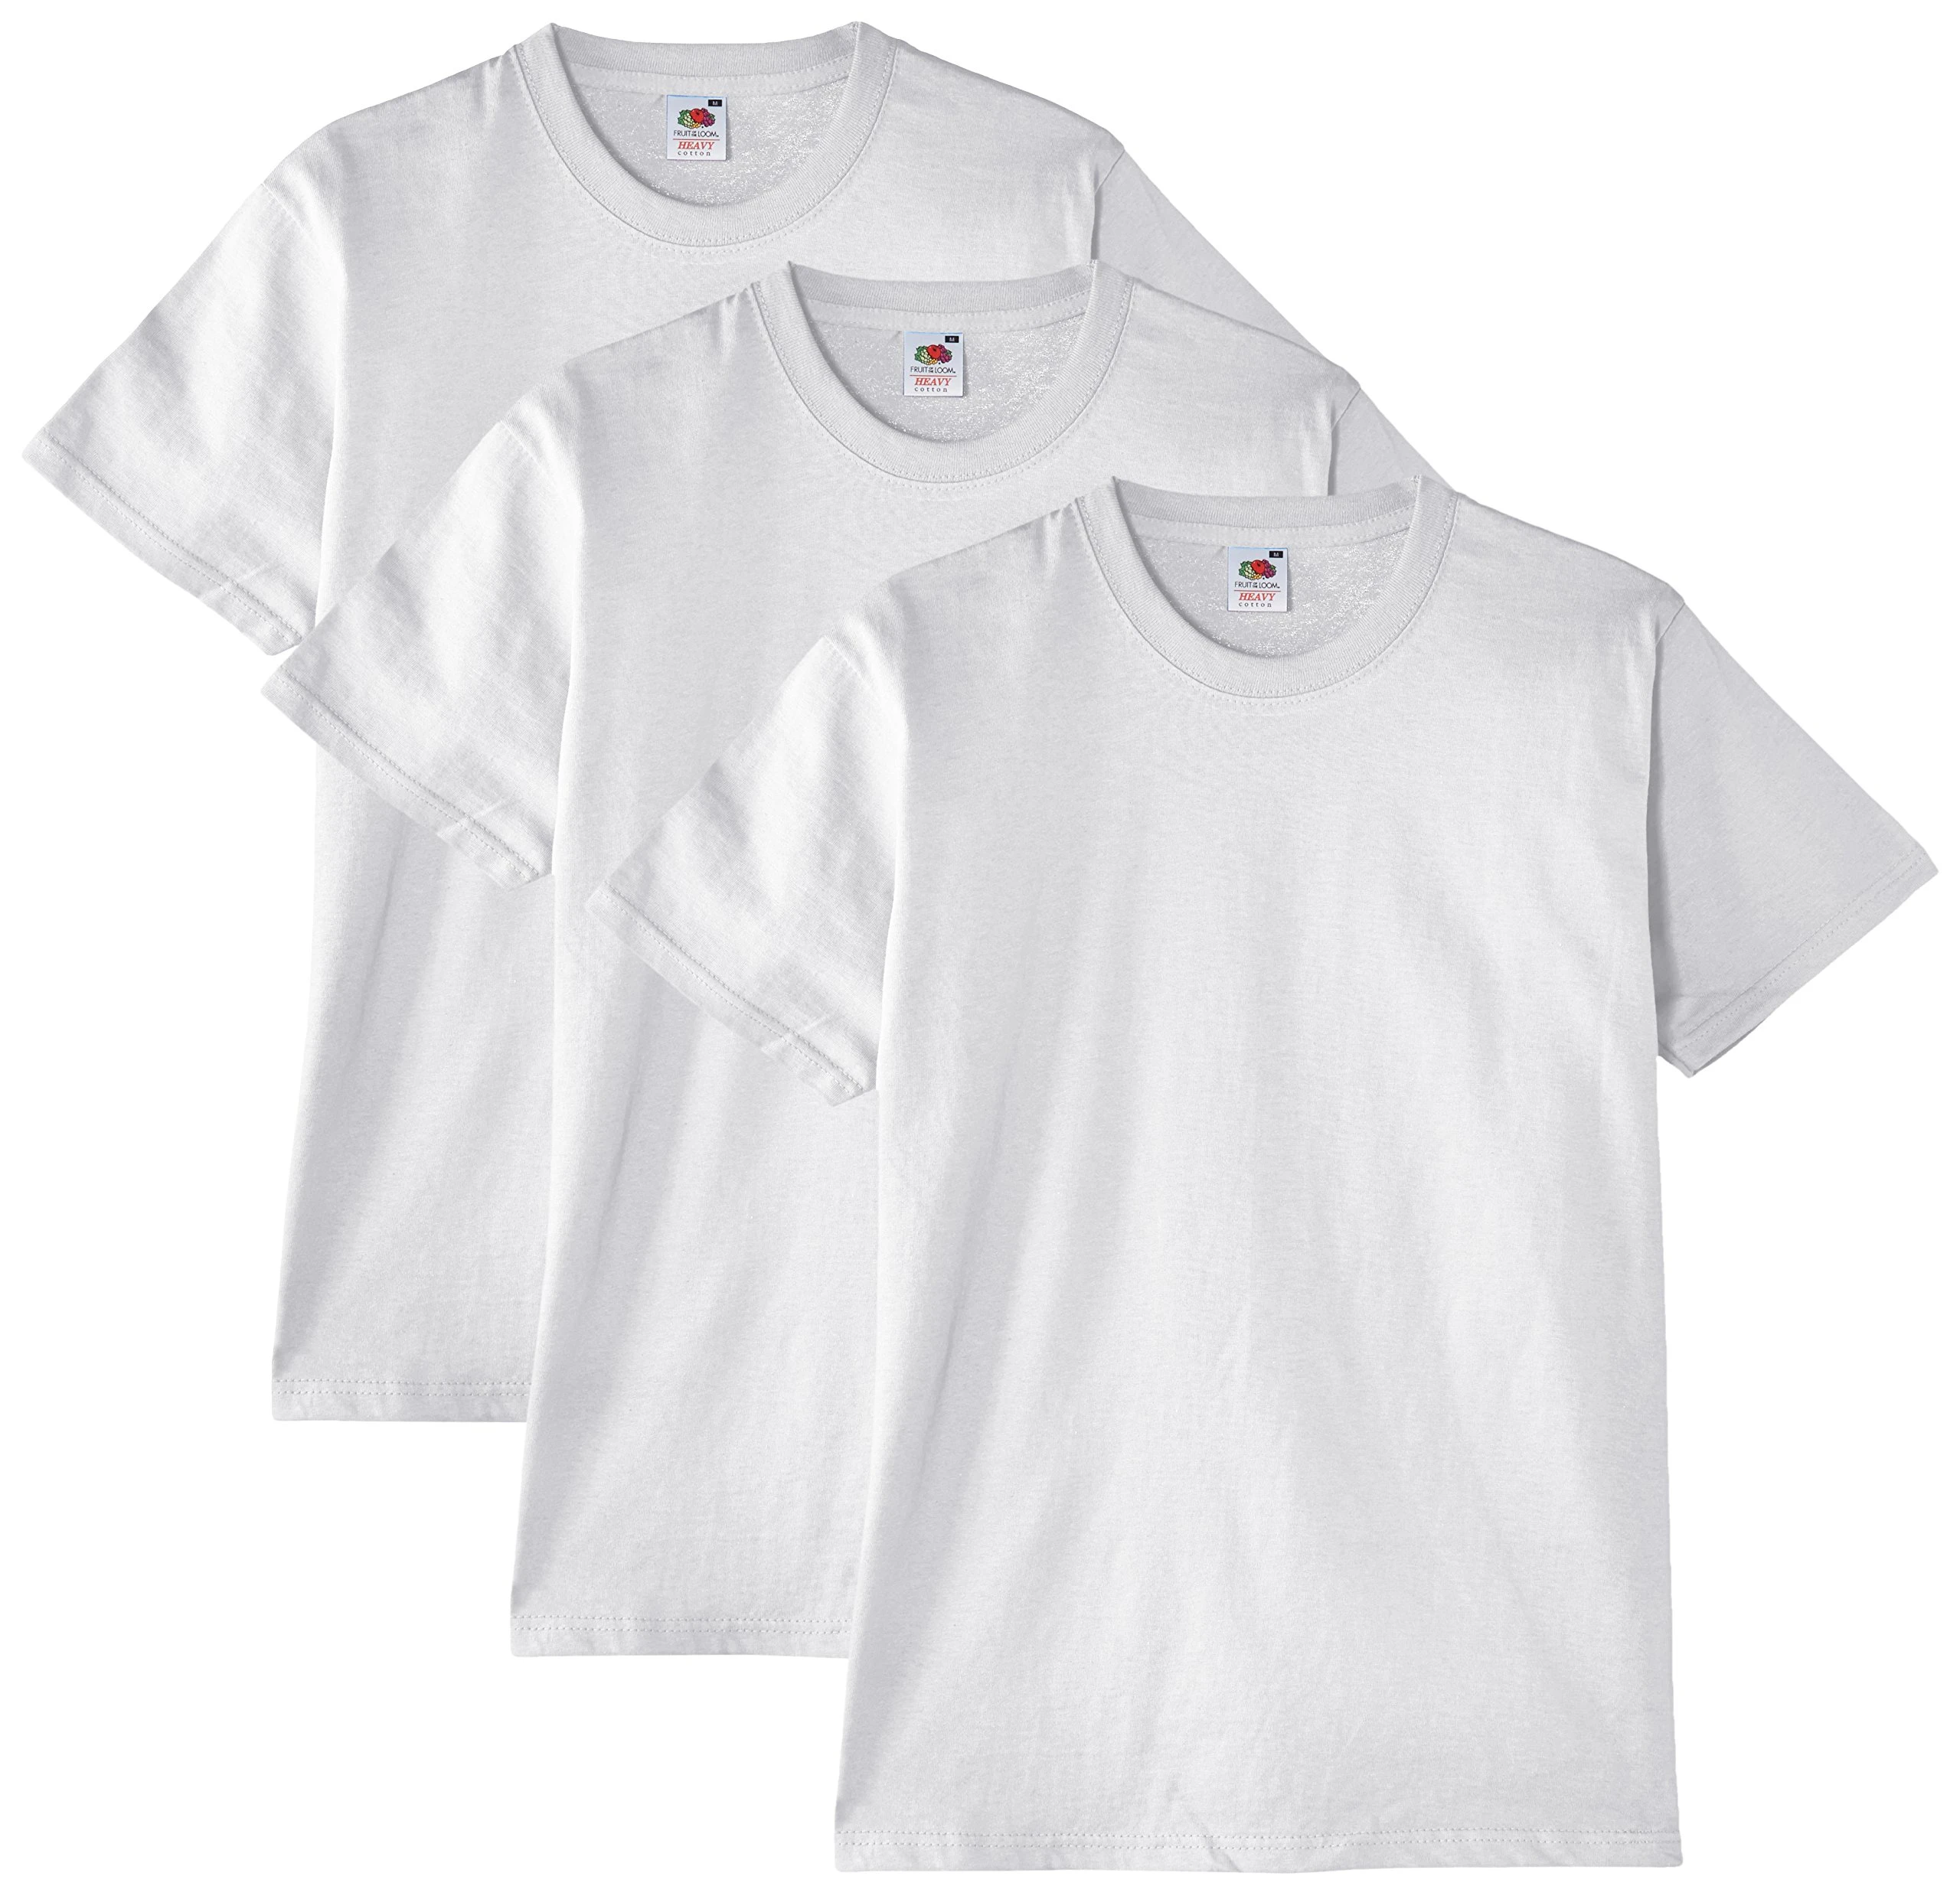 Basic Sleeve T-shirts Short Sleeve | Basic Cotton Men's - 3 T- shirts - Aliexpress